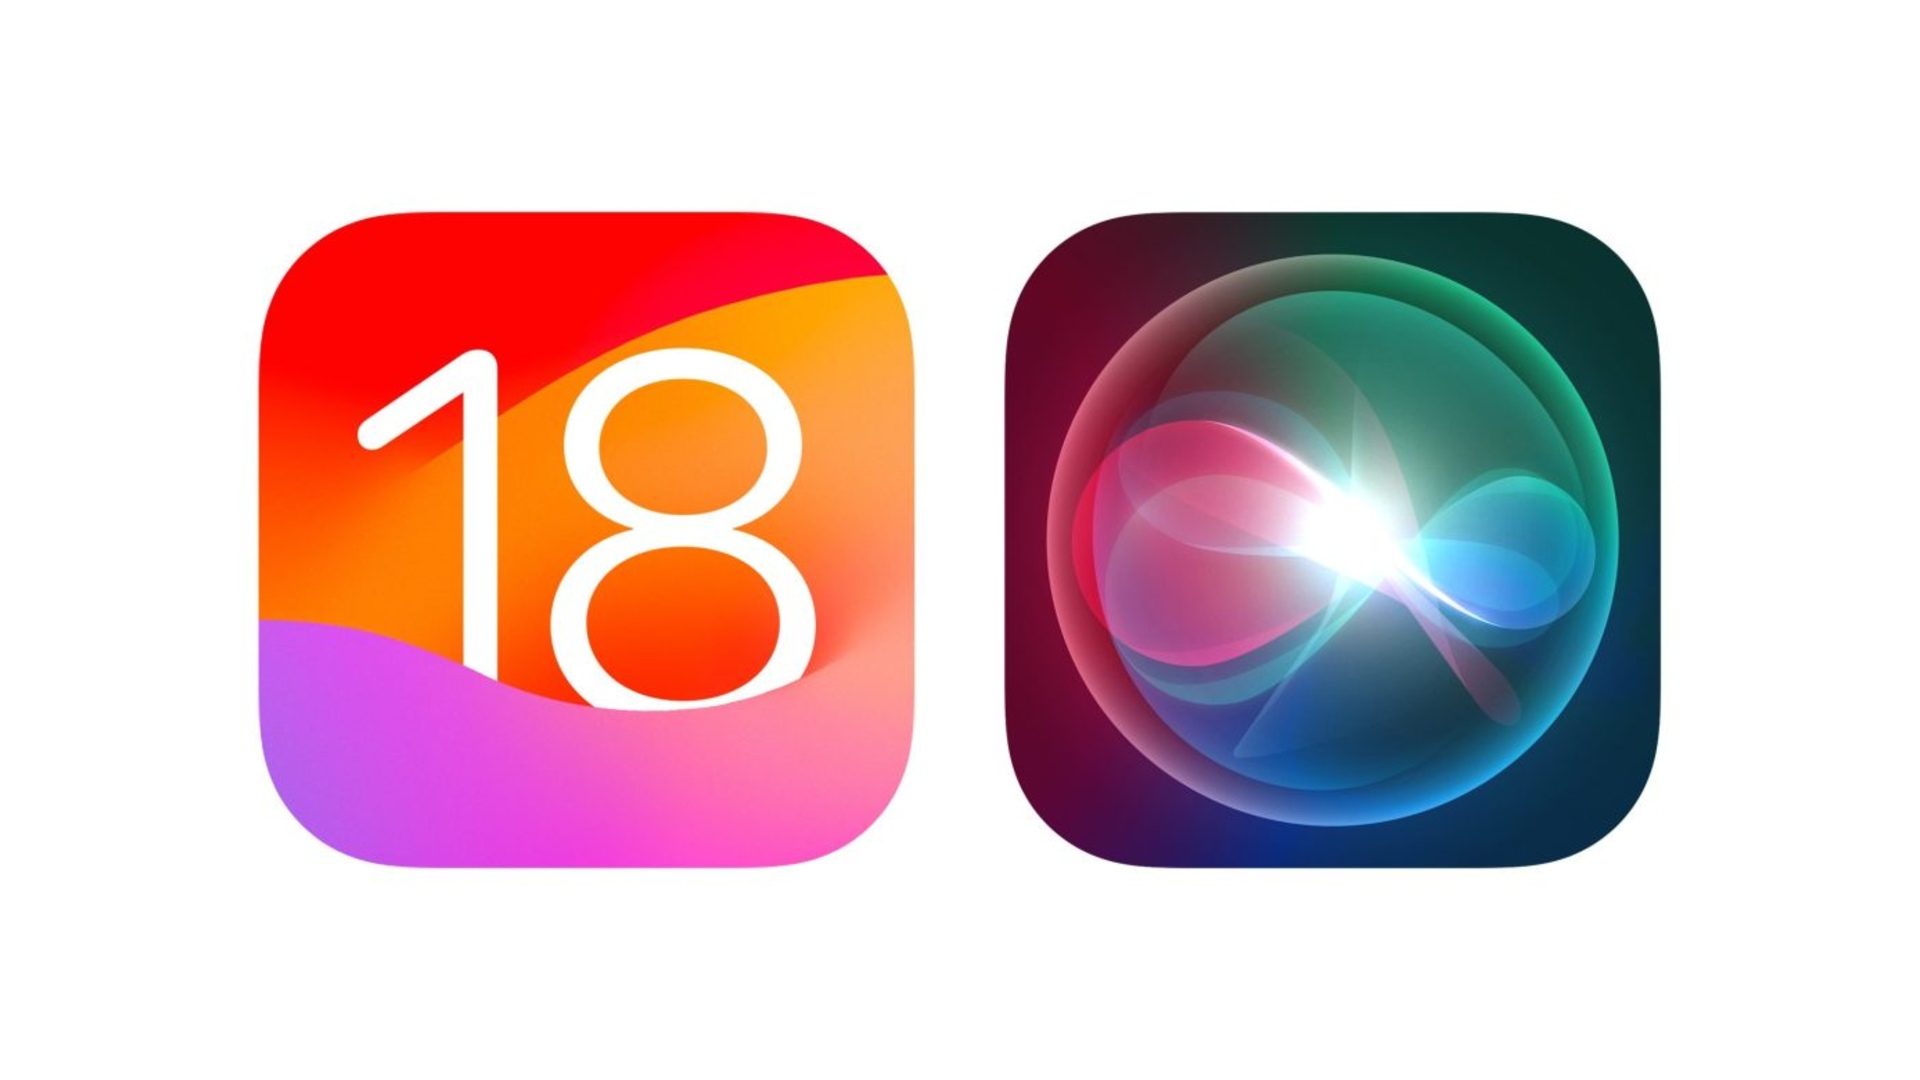 مولد هوش مصنوعی در iOS 18 و iPadOS 18